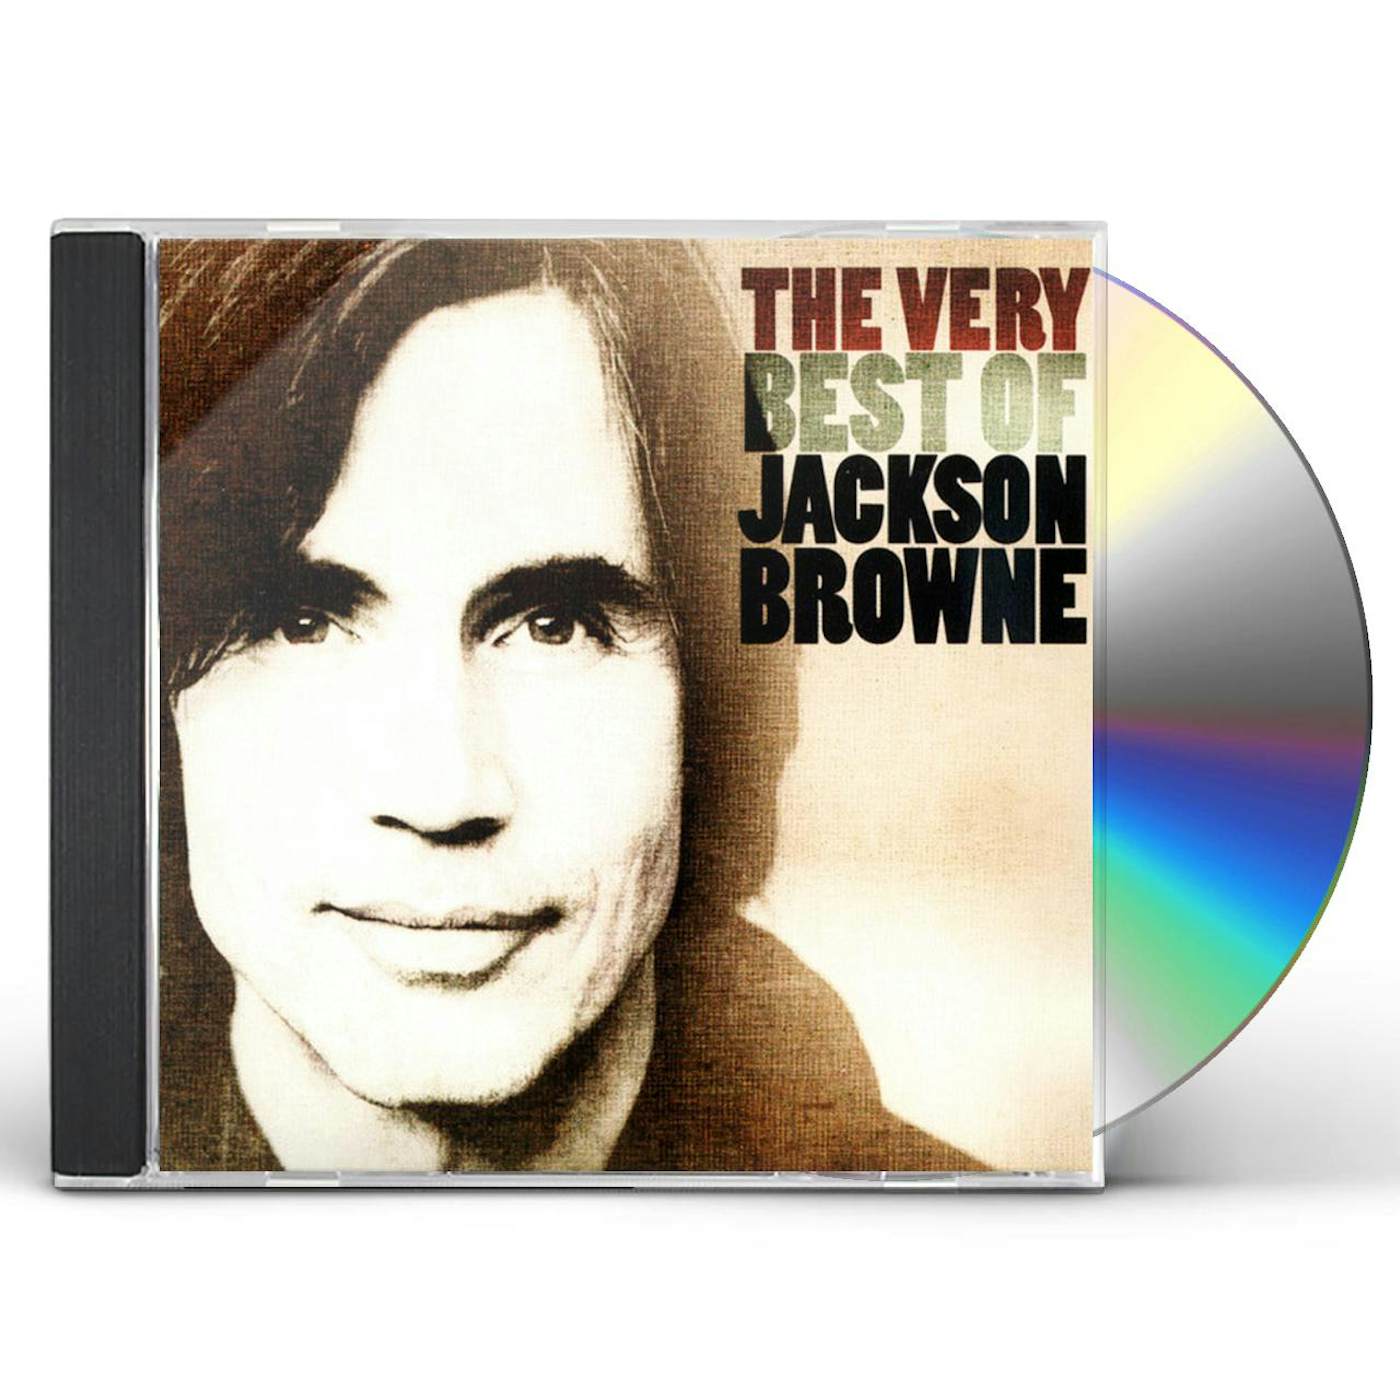 VERY BEST OF JACKSON BROWNE CD